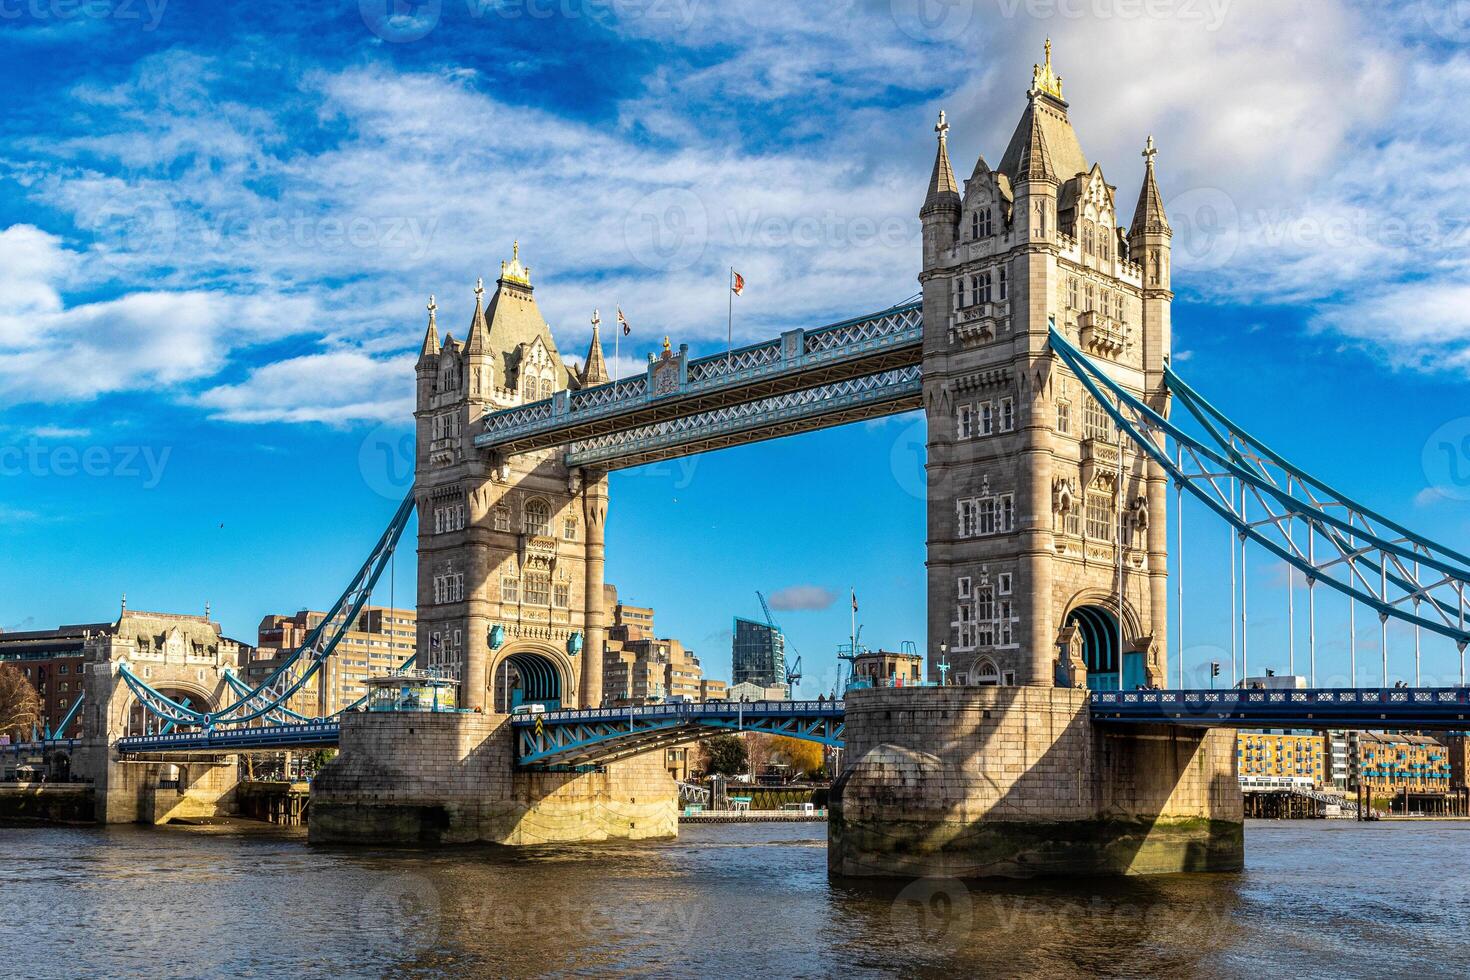 soleado día ver de el icónico torre puente terminado el río Támesis en Londres, Reino Unido, con azul cielo y mullido nubes foto